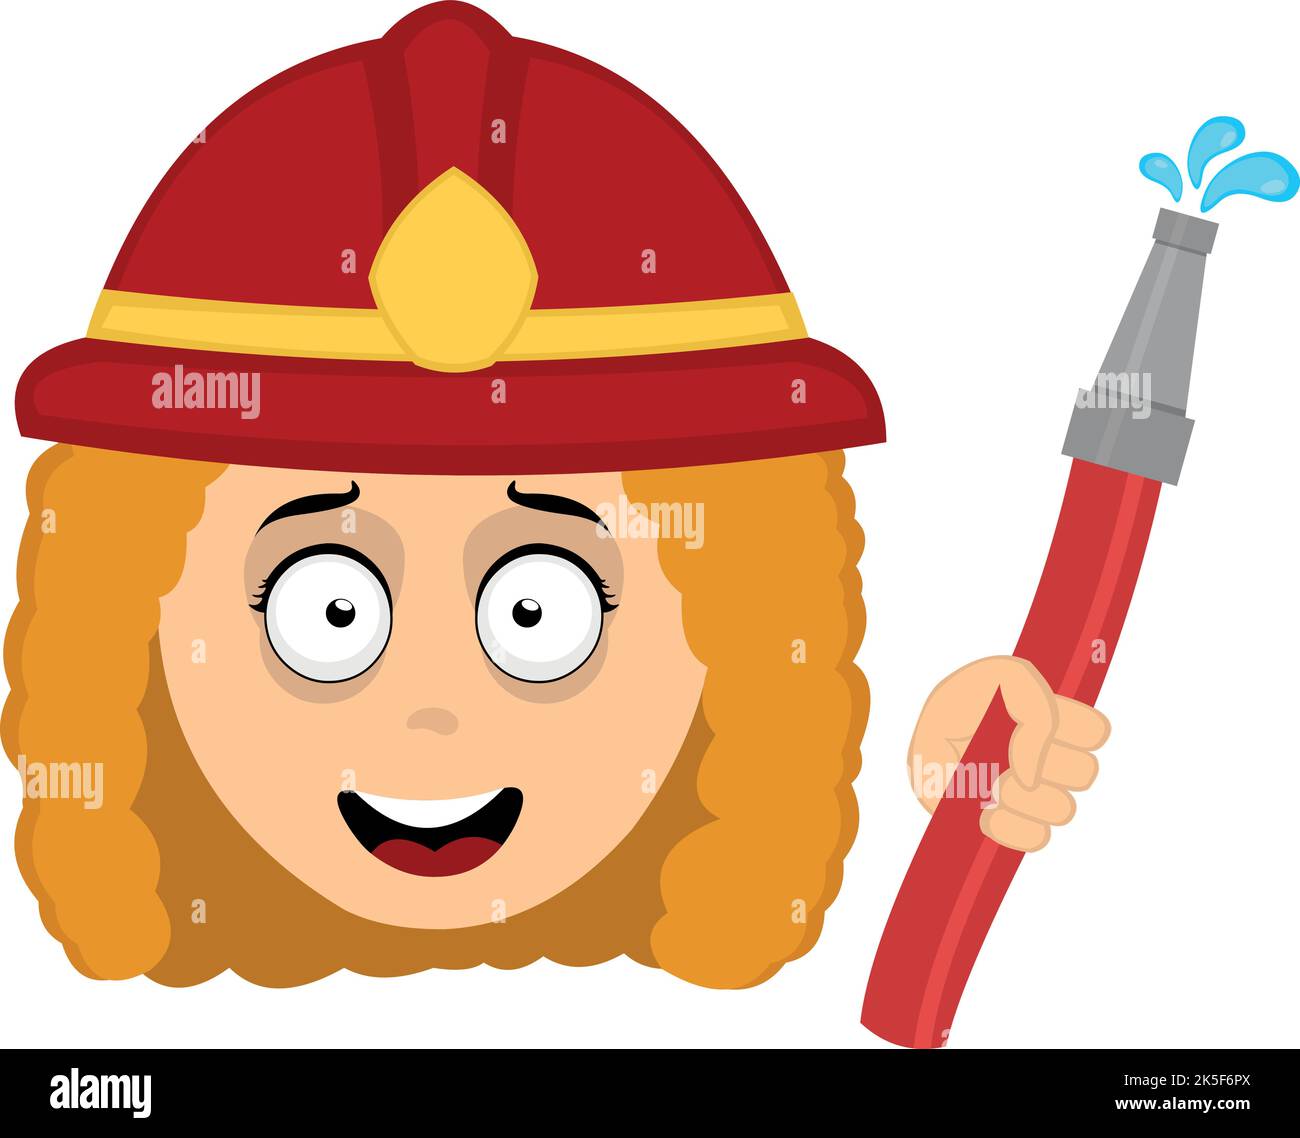 Vektor-Illustration des Gesichts einer Comic-Feuerwehrfrau mit einem Helm und Schlauch in der Hand Stock Vektor